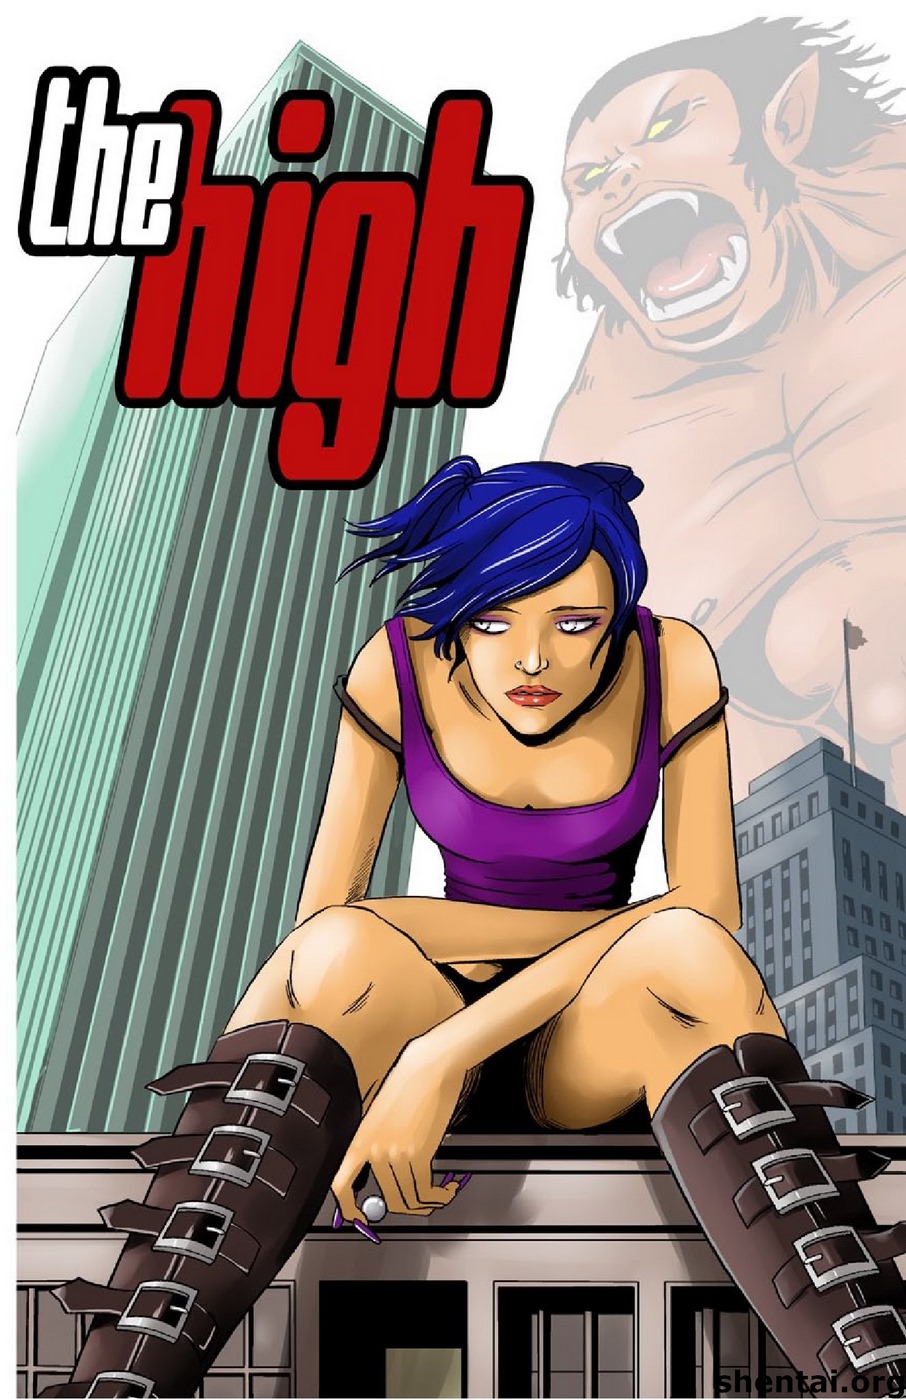 Porn Comics - Giantess- The High porn comics 8 muses